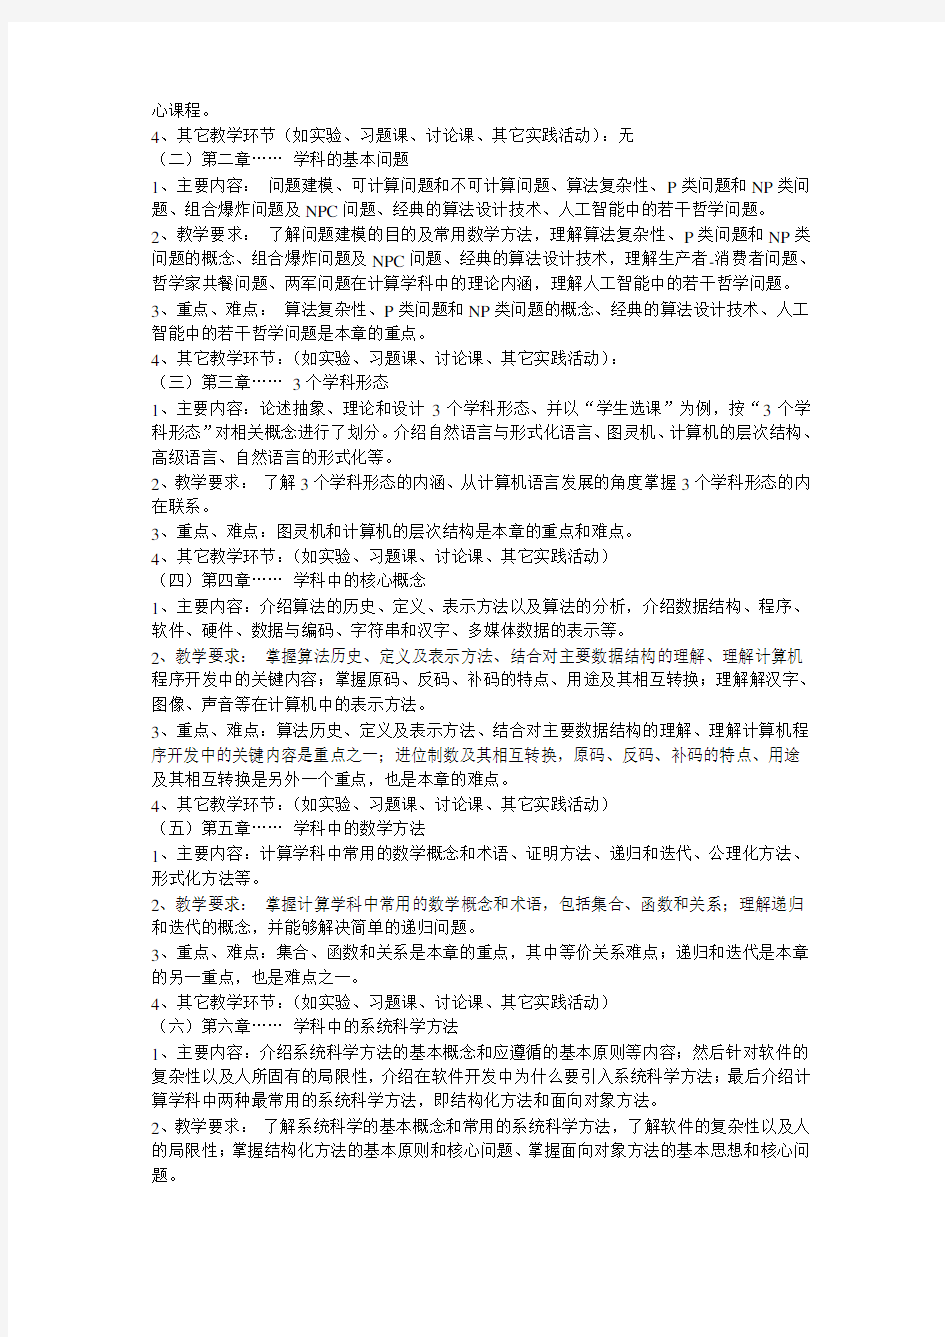 (完整版)中国海洋大学计算机科学与技术导论课程大纲(理论课程)